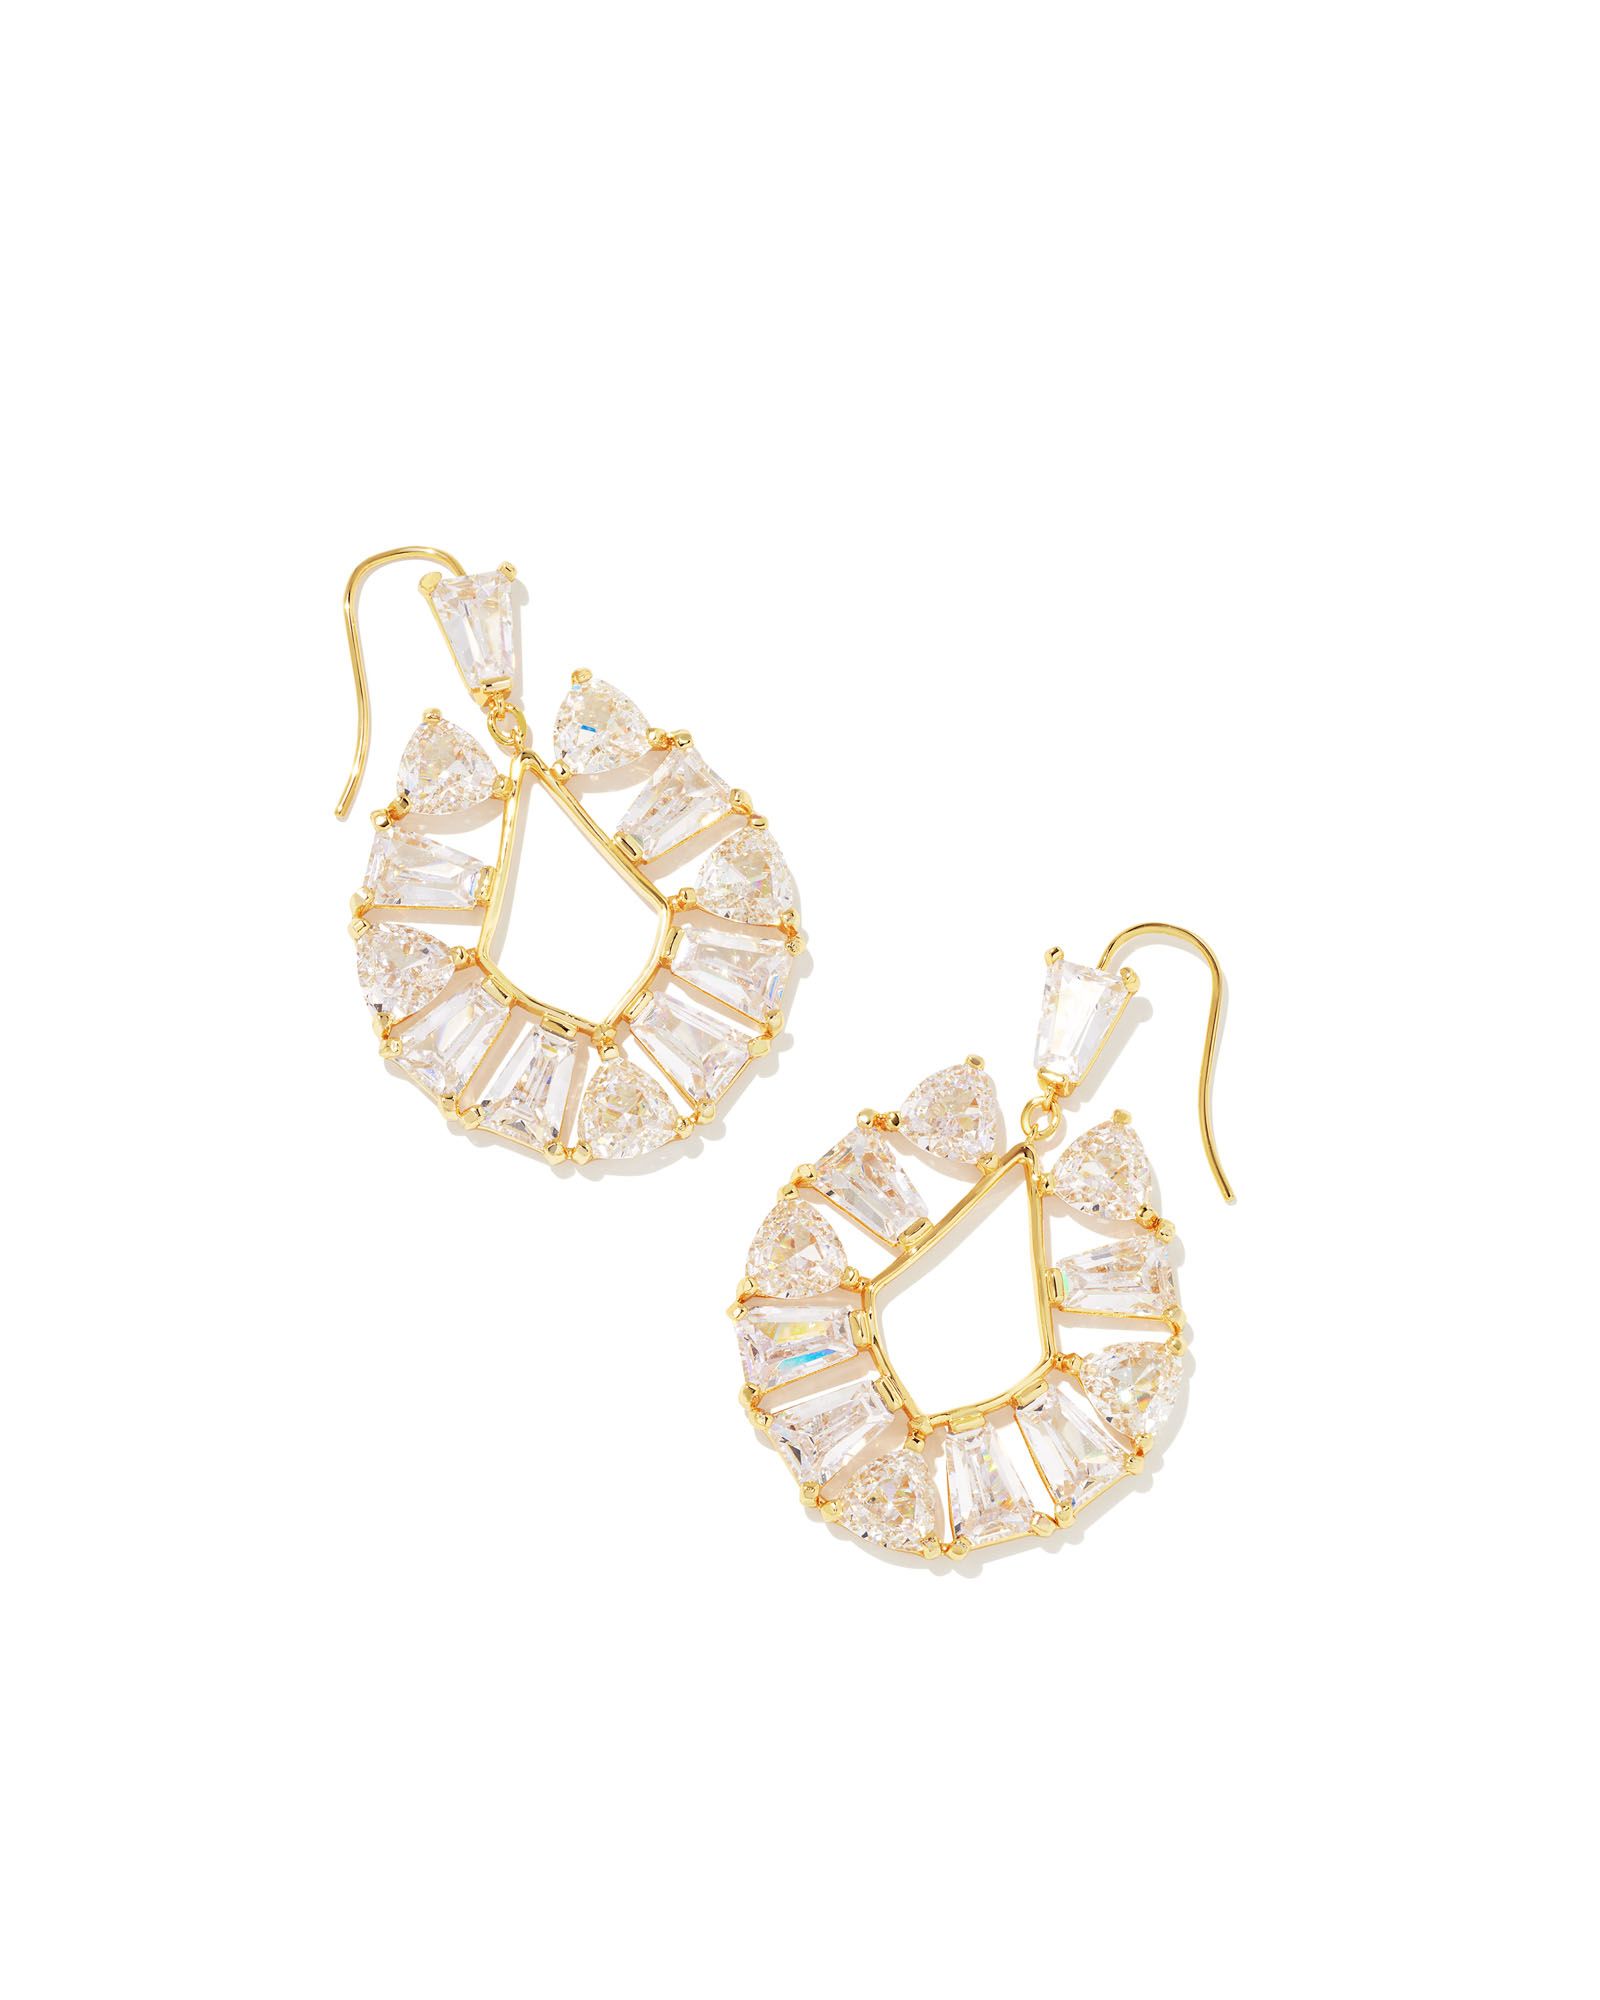 Blair Gold Jewel Open Frame Earrings in White Crystal | Kendra Scott | Kendra Scott